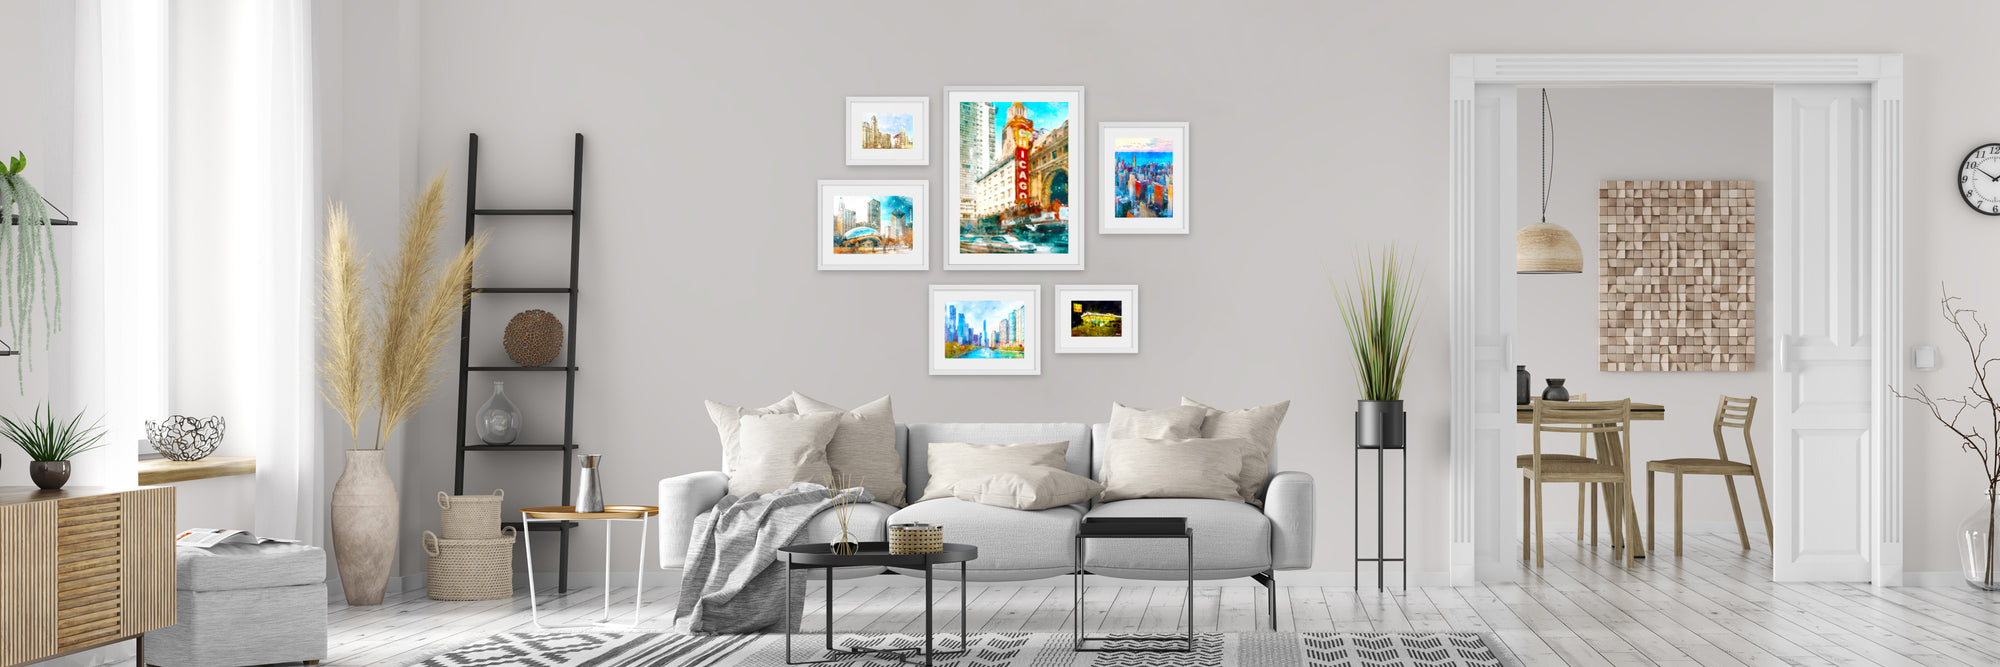 Chicago framed art set in modern living room.